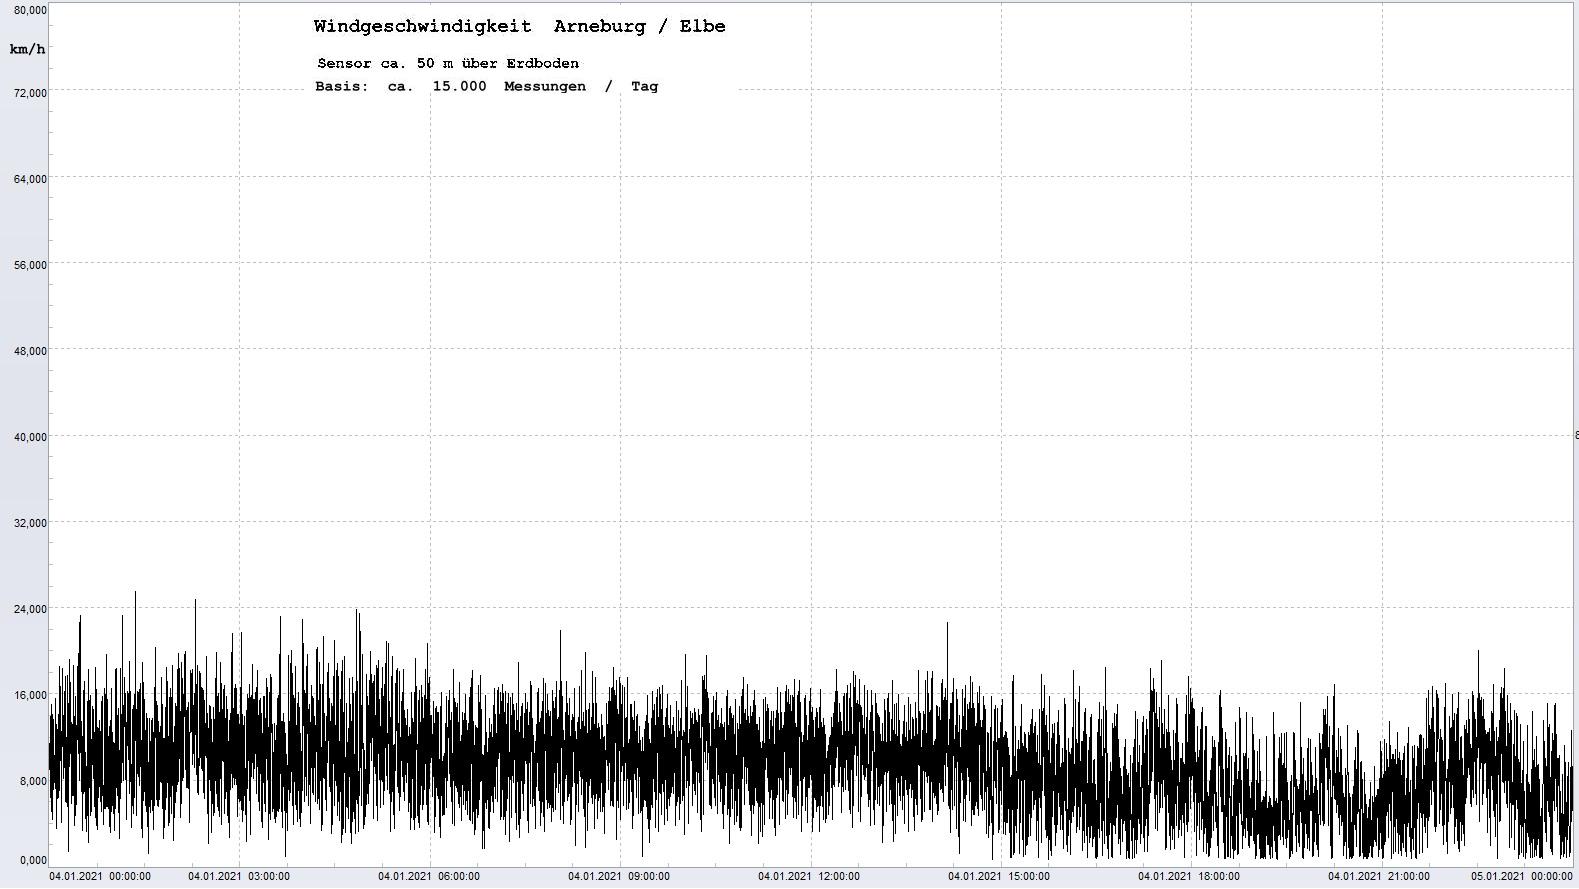 Arneburg Tages-Diagramm Winddaten, 04.01.2021
  Histogramm, Sensor auf Gebude, ca. 50 m ber Erdboden, Basis: 5s-Aufzeichnung